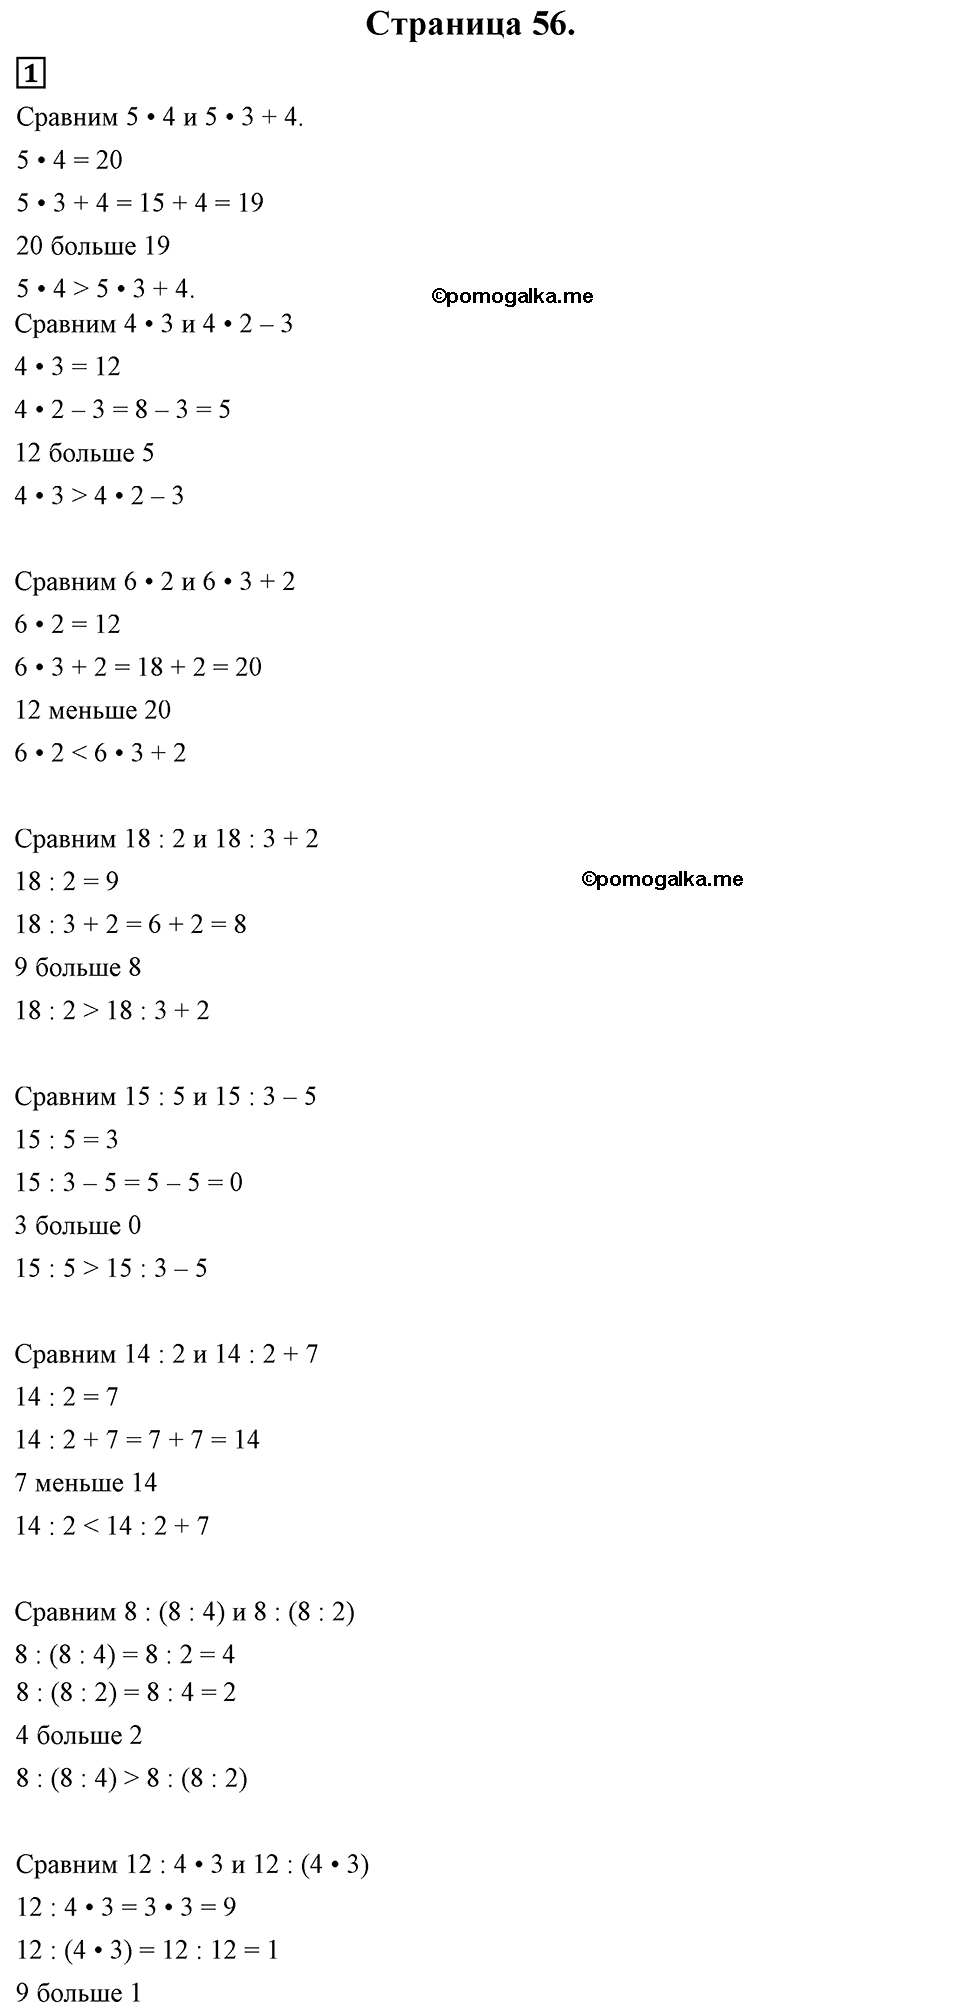 Страница №56 Часть 1 математика 3 класс Дорофеев